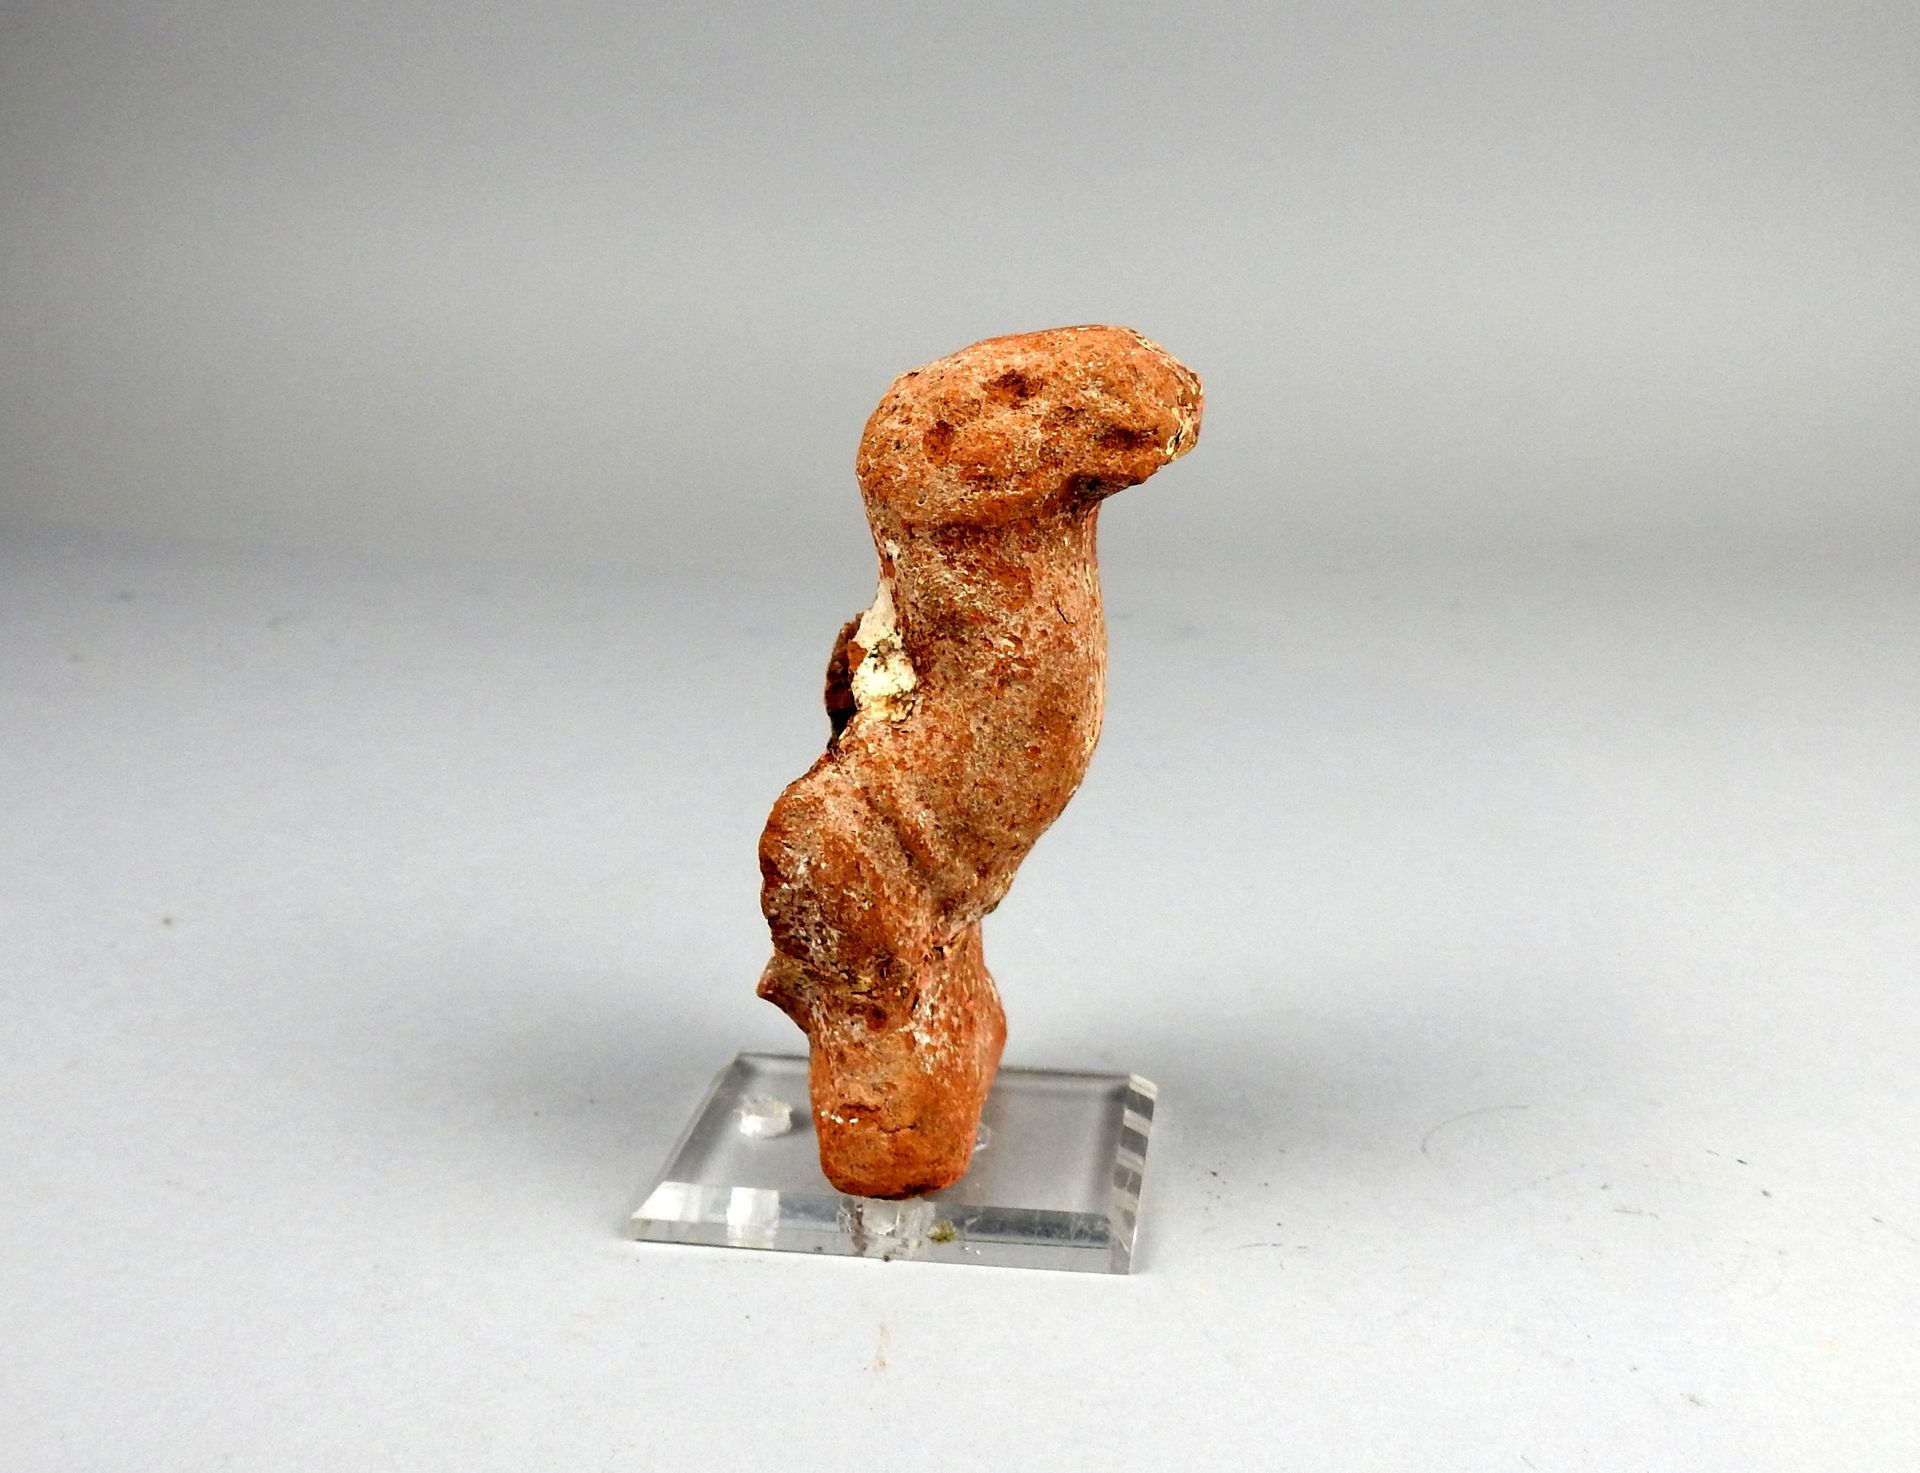 Null 骆驼的原形

兵马俑10厘米的修复物

罗马时期